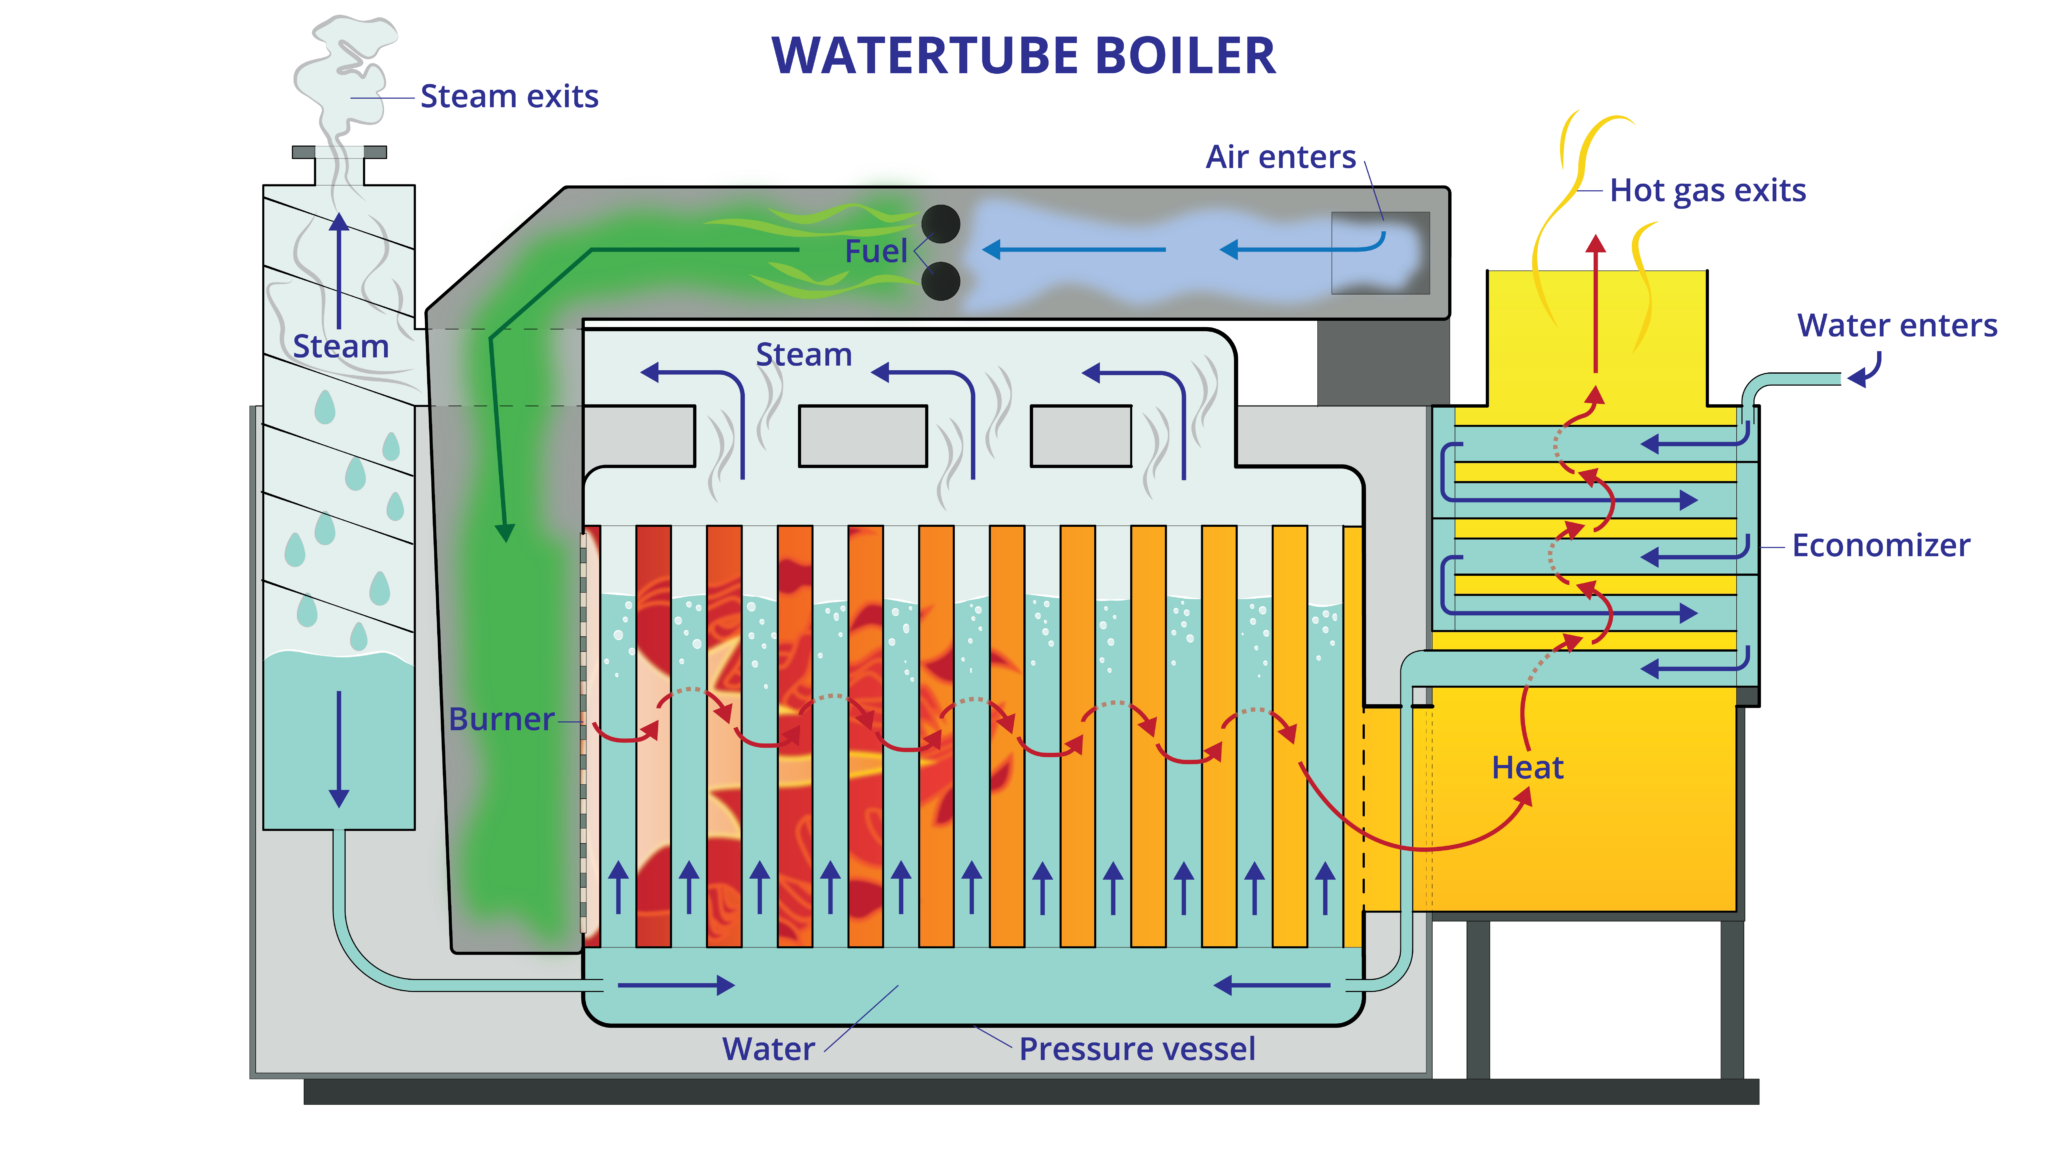 Watertube boiler